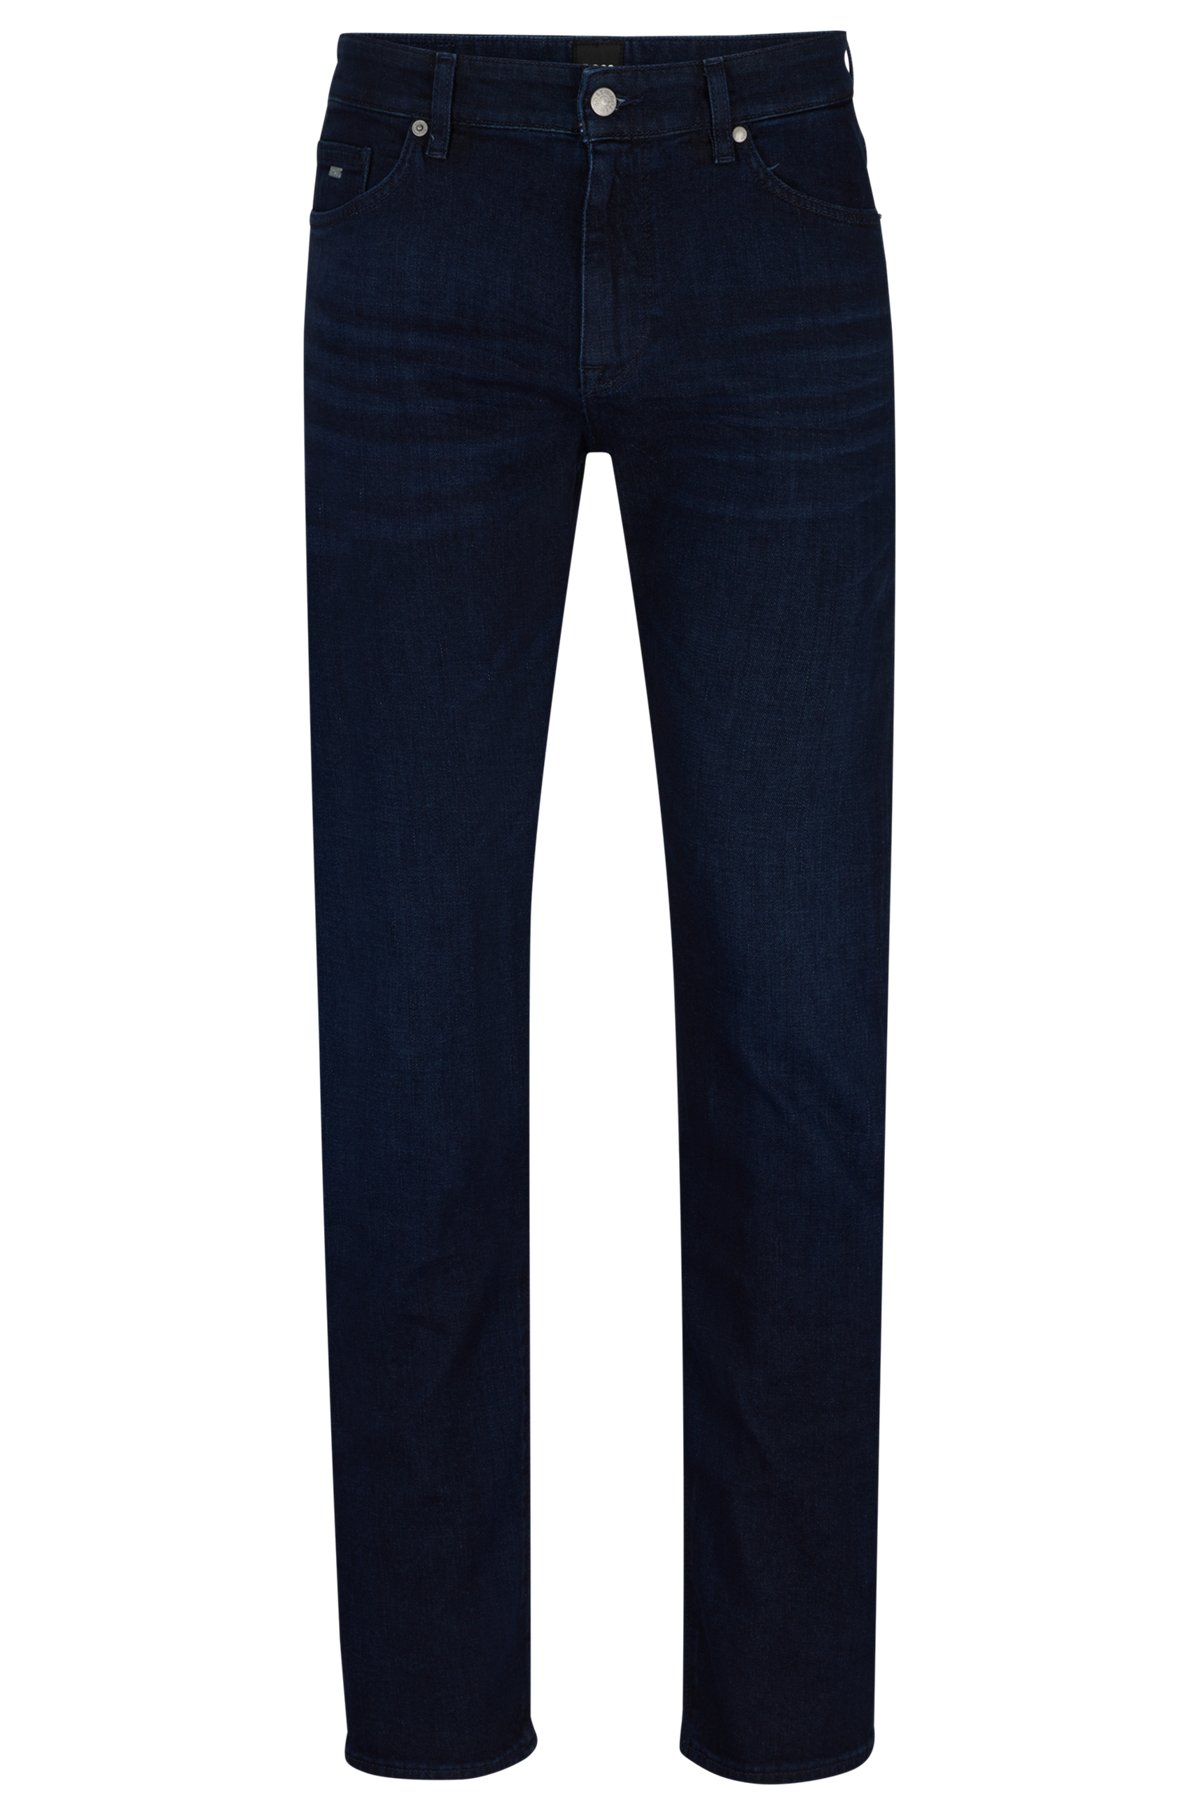 Jeans regular fit in denim blu scuro effetto cashmere, Blu scuro